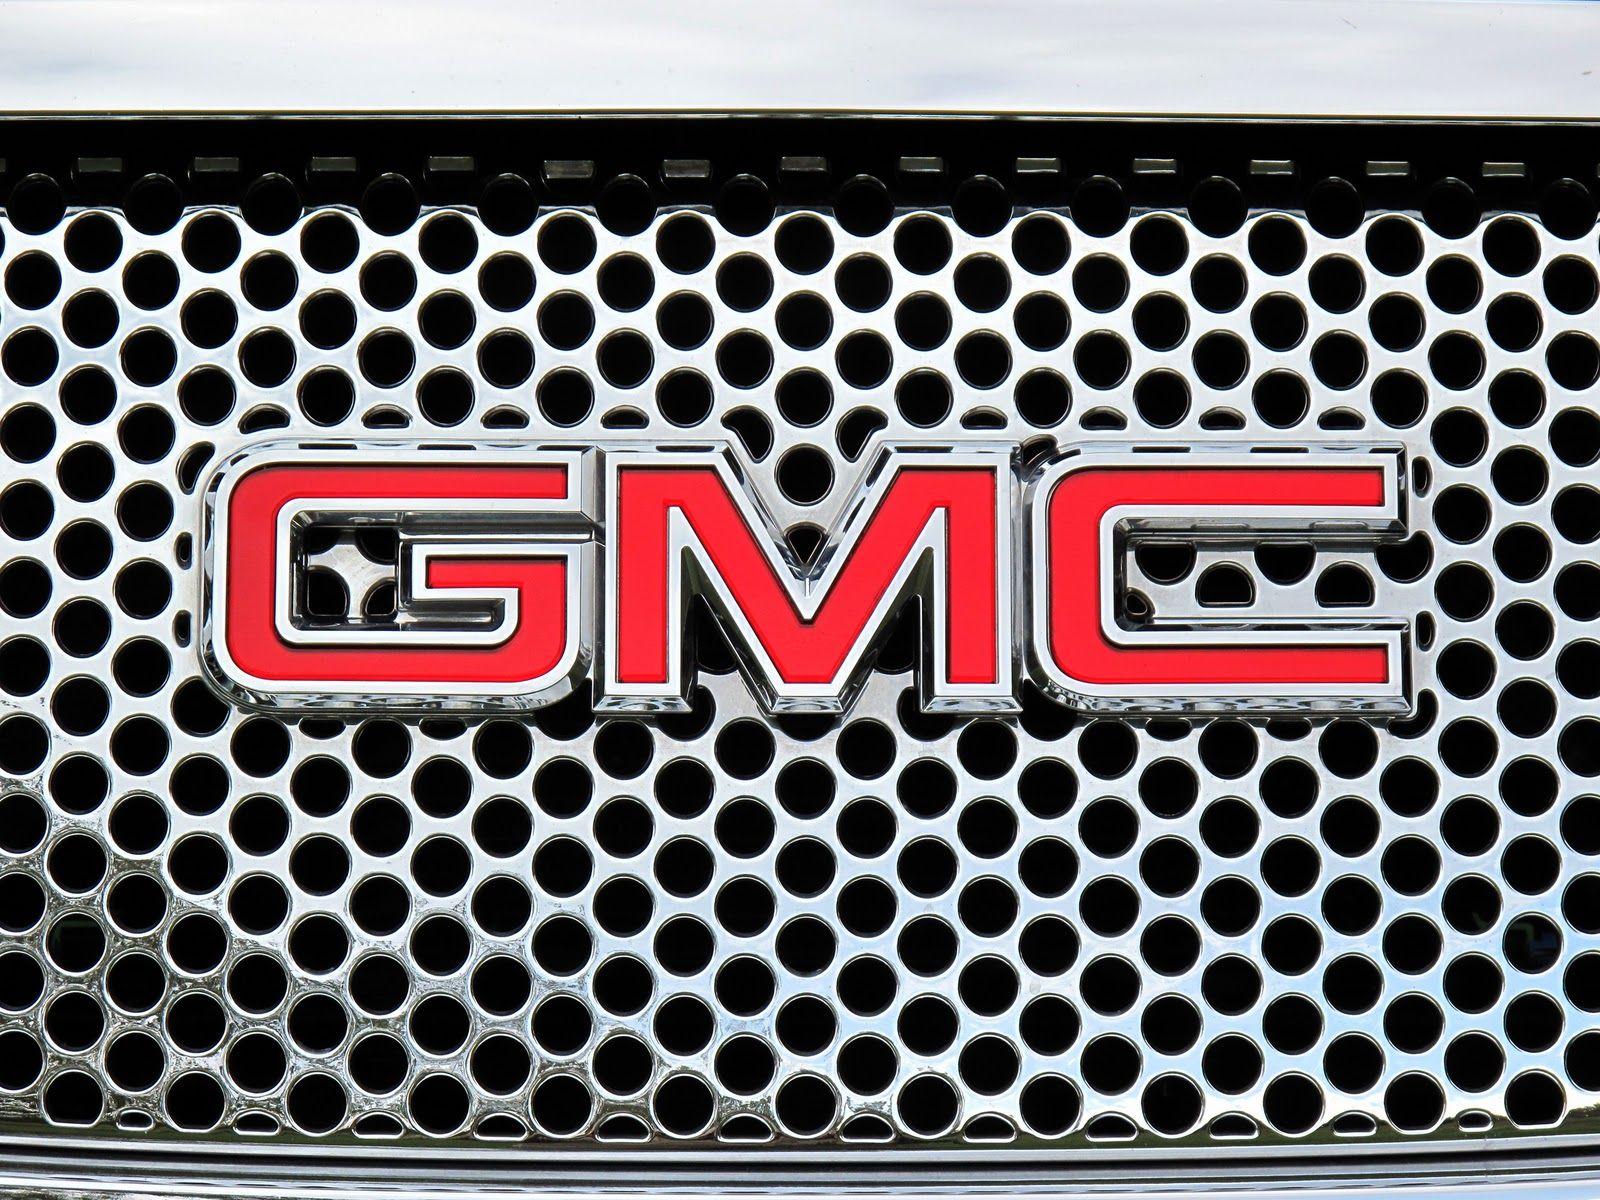 Red Auto Company Logo - GMC Logo, GMC Car Symbol Meaning and History | Car Brand Names.com